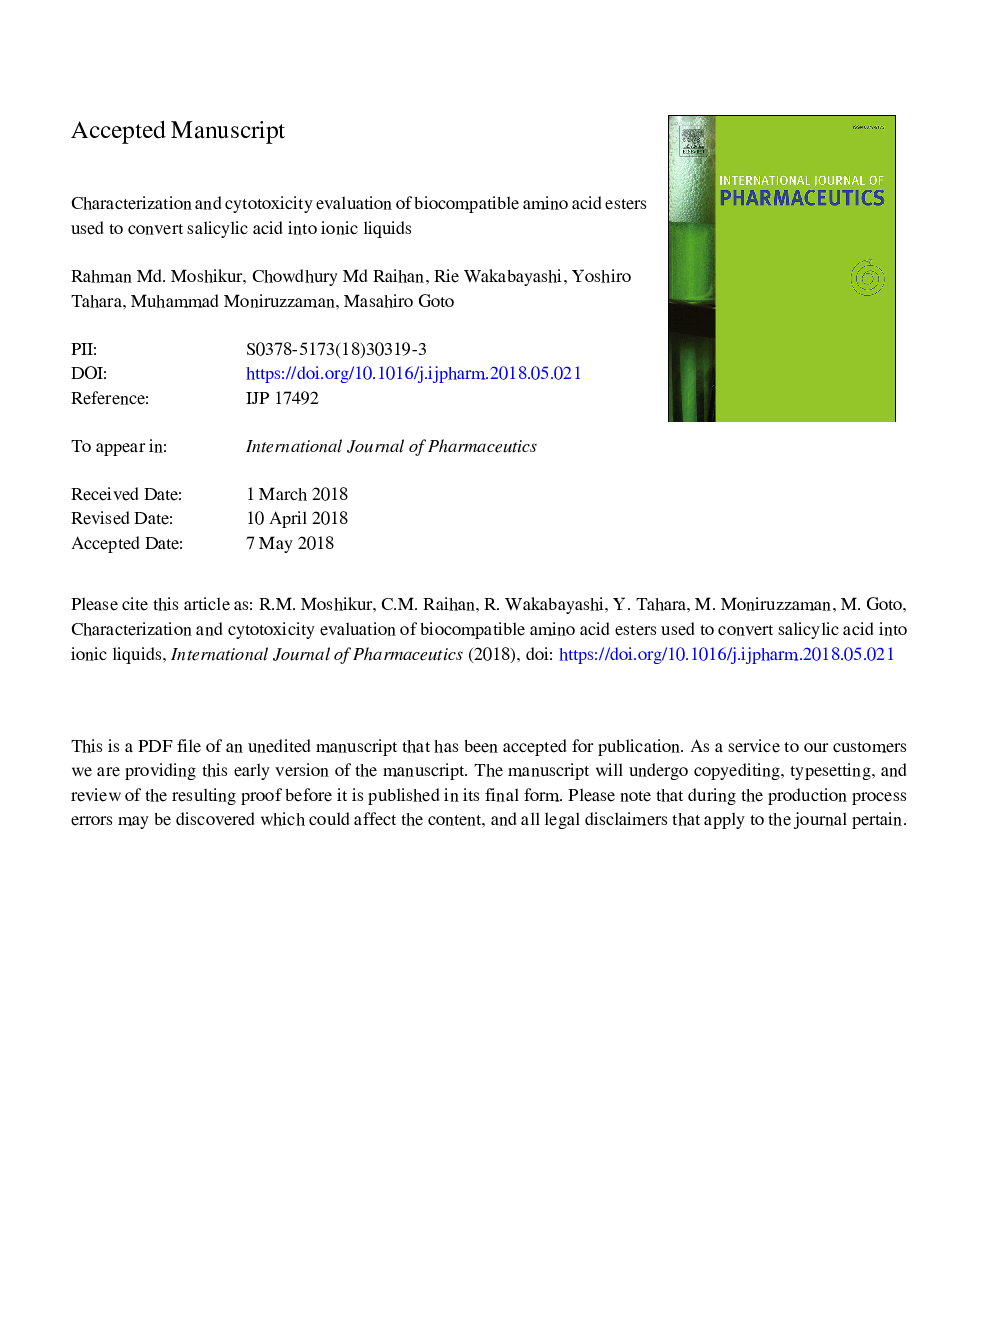 ارزیابی و ارزیابی سمیت مسمومیت های اسید آمینه اسید های بیولوژیک مورد استفاده برای تبدیل اسید سالیسیلیک به مایعات یونی 